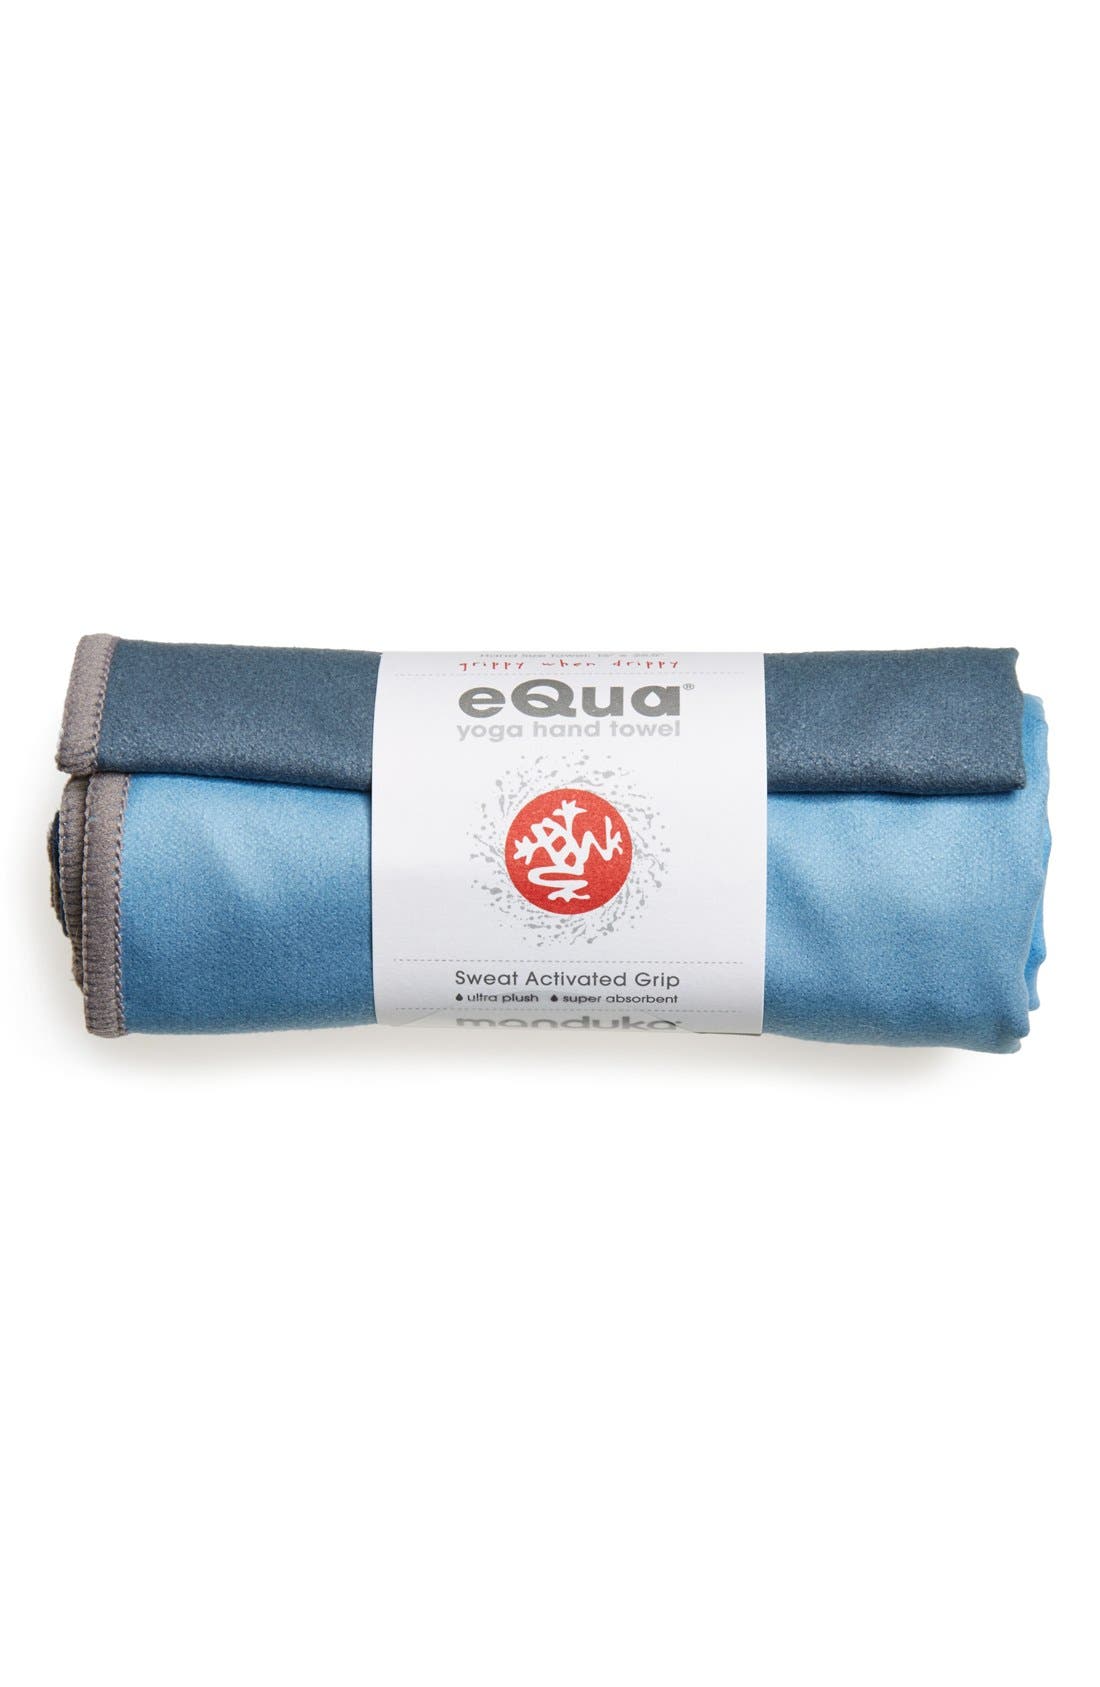 equa hand towel